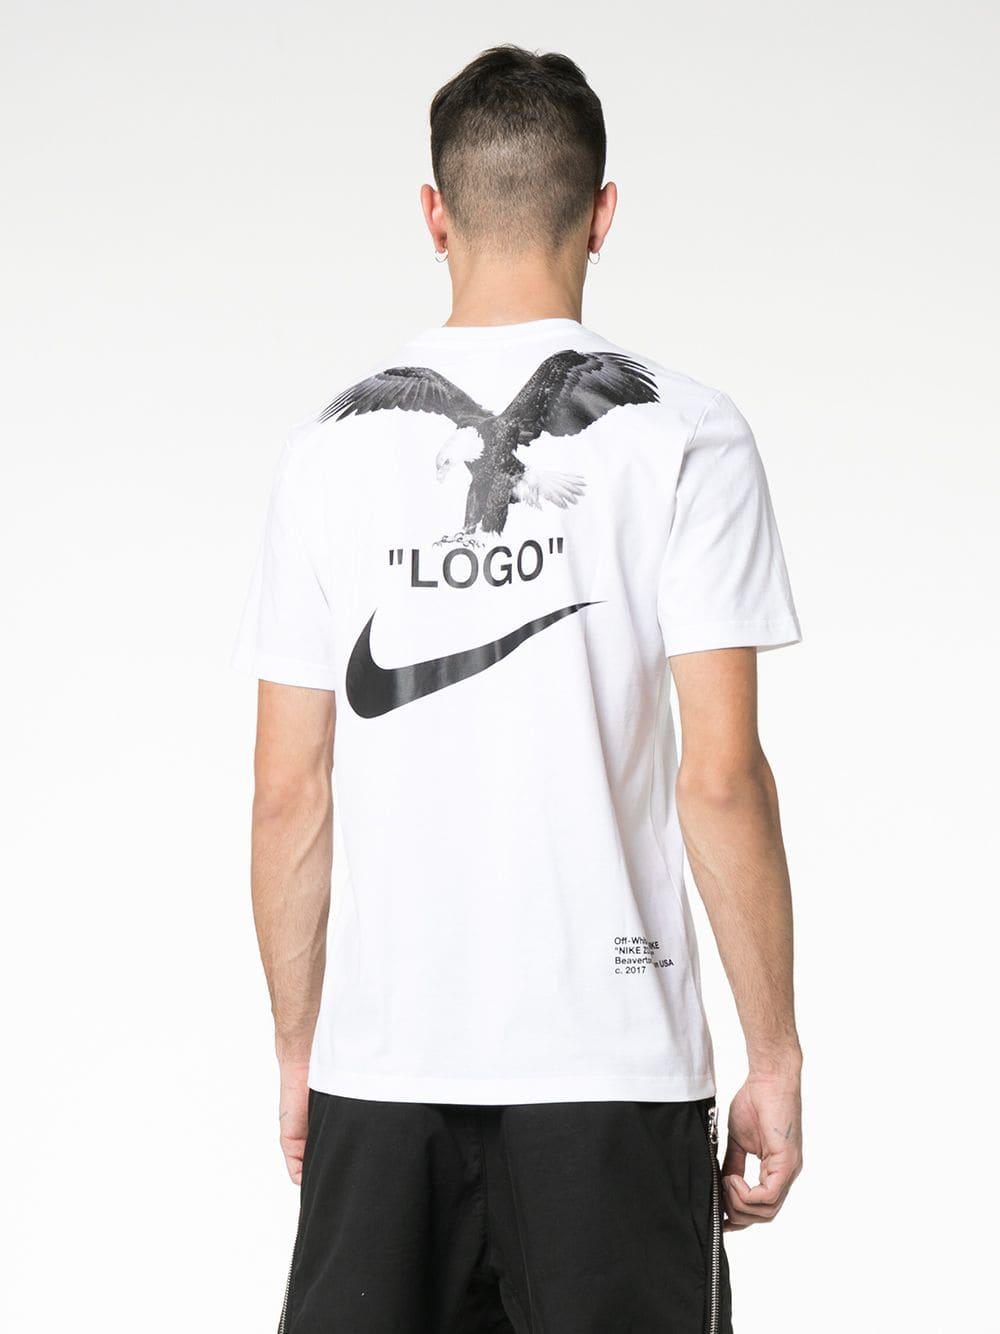 Off White X Nike Camiseta Switzerland, SAVE 56% - mpgc.net